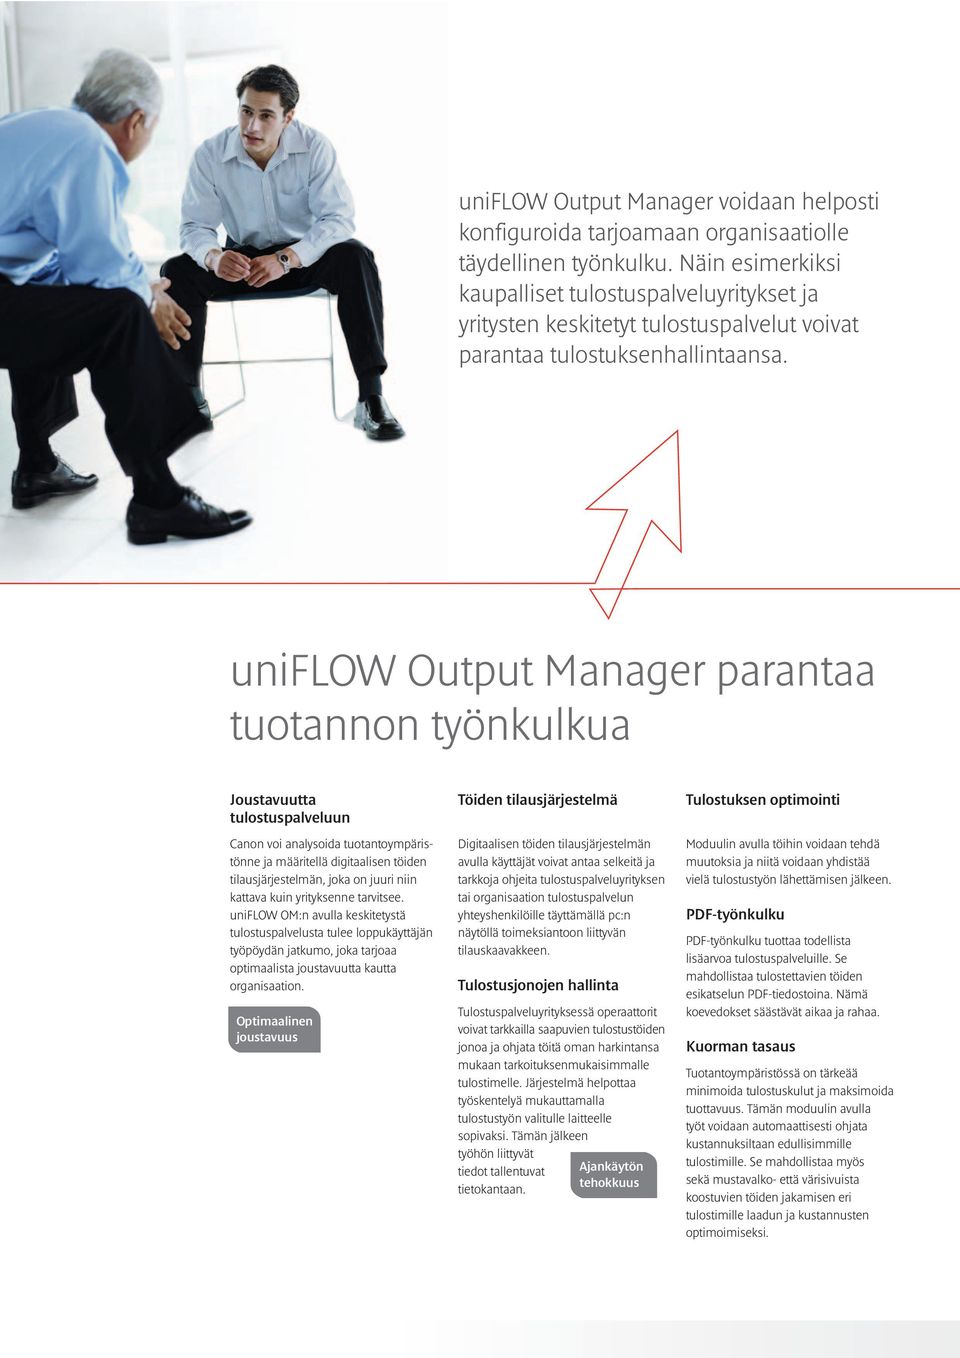 uniflow Output Manager parantaa tuotannon työnkulkua Joustavuutta tulostuspalveluun Canon voi analysoida tuotantoympäristönne ja määritellä digitaalisen töiden tilausjärjestelmän, joka on juuri niin